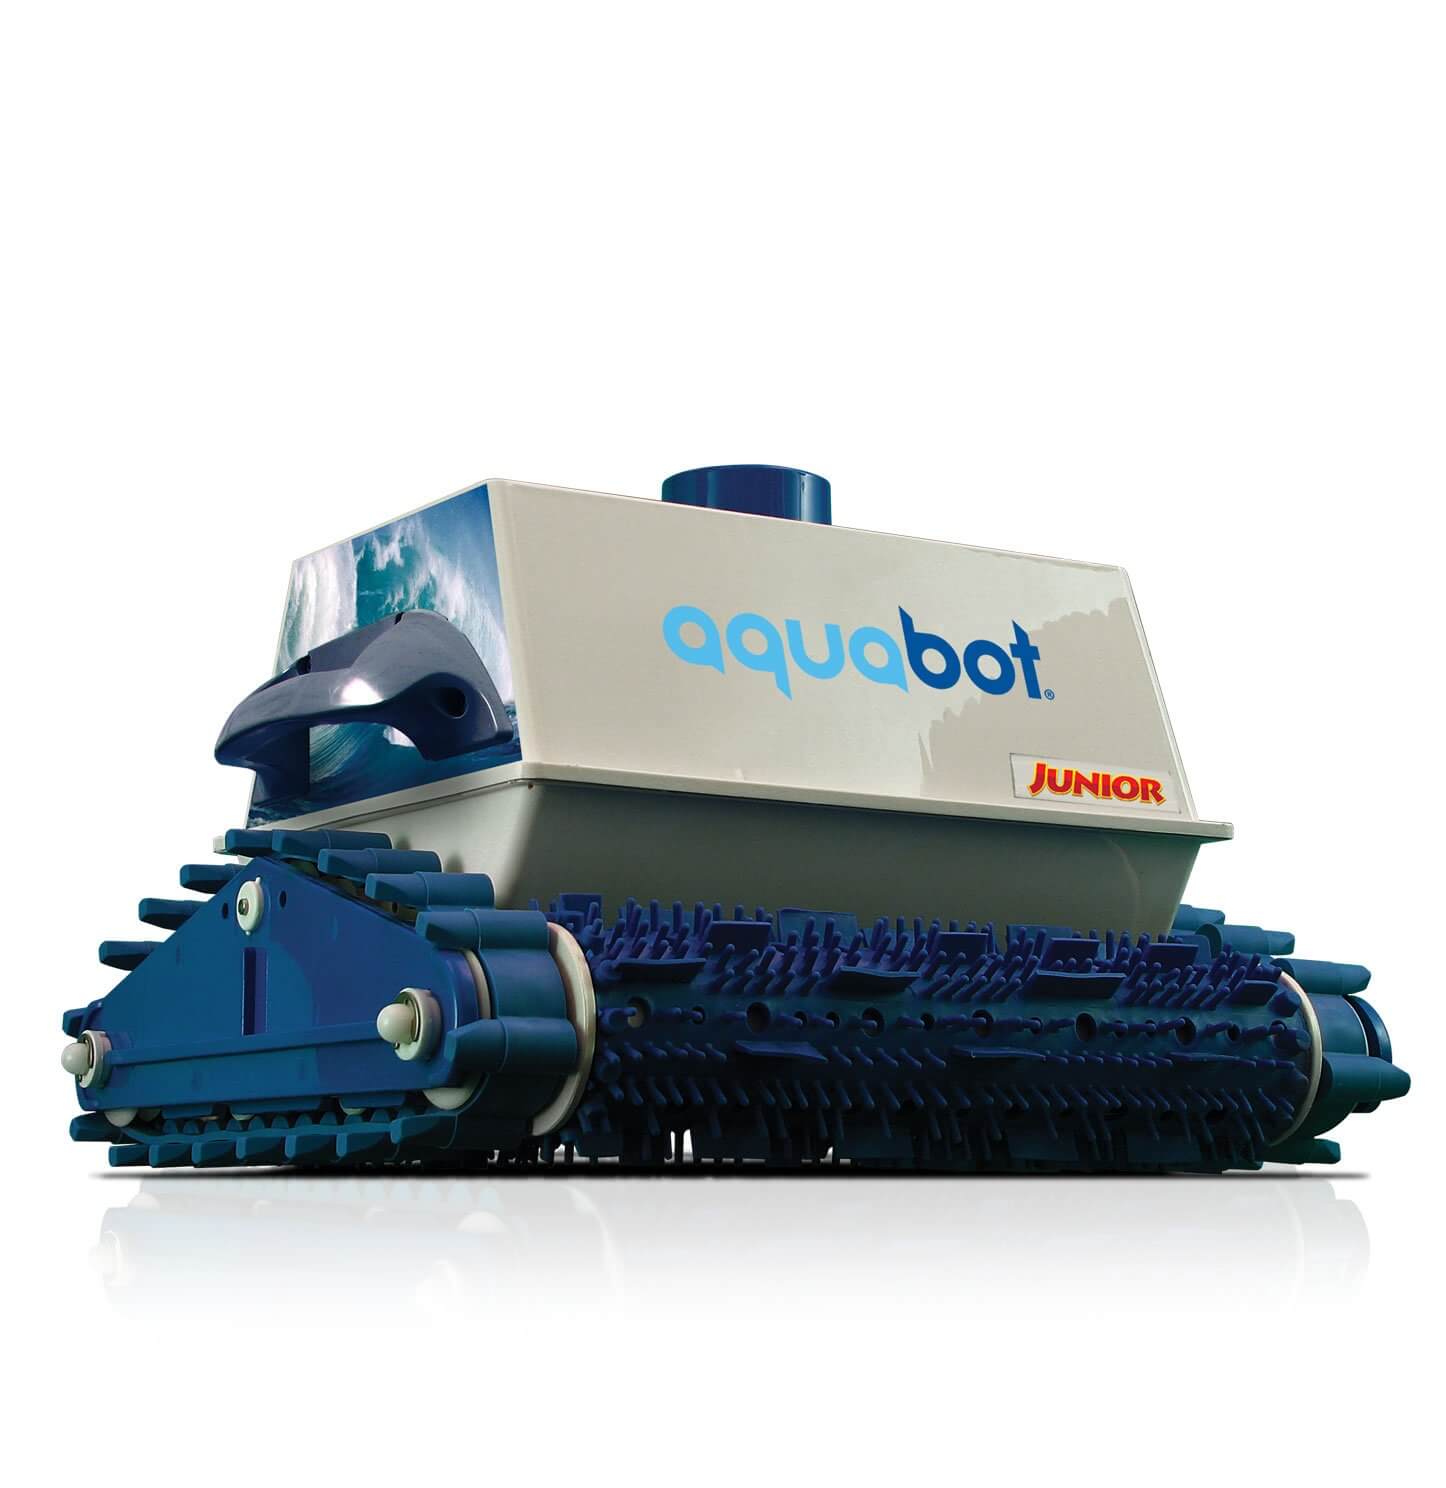 Aquabot Junior Automatic Robotic In Ground Pool